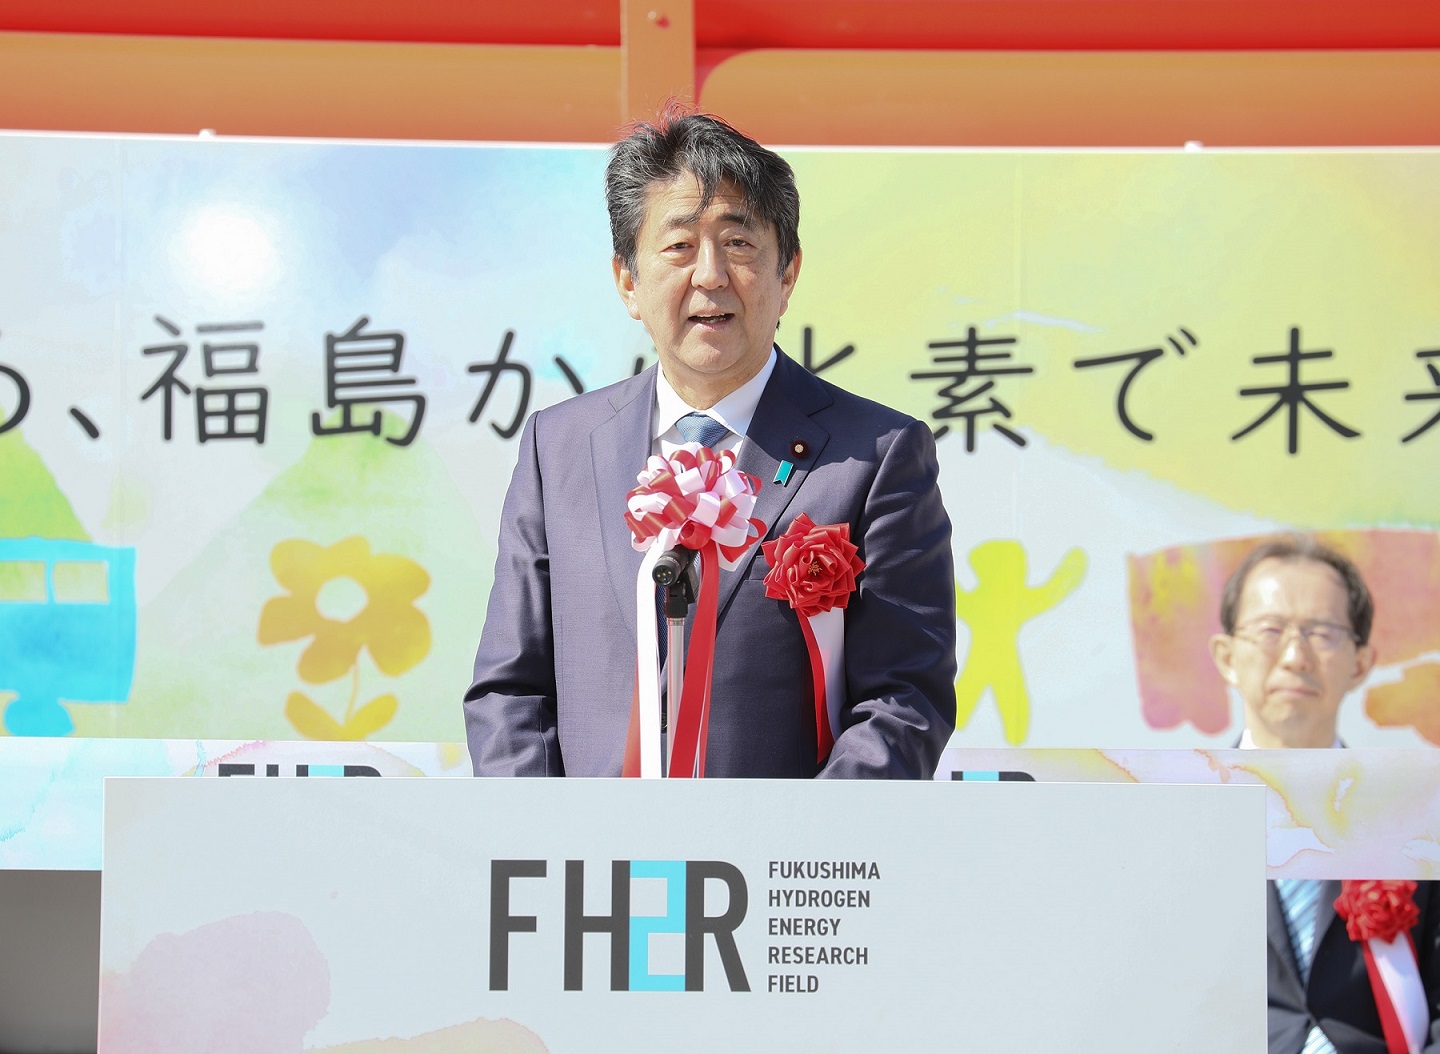 福島水素エネルギー研究フィールド開所式で挨拶する安倍総理